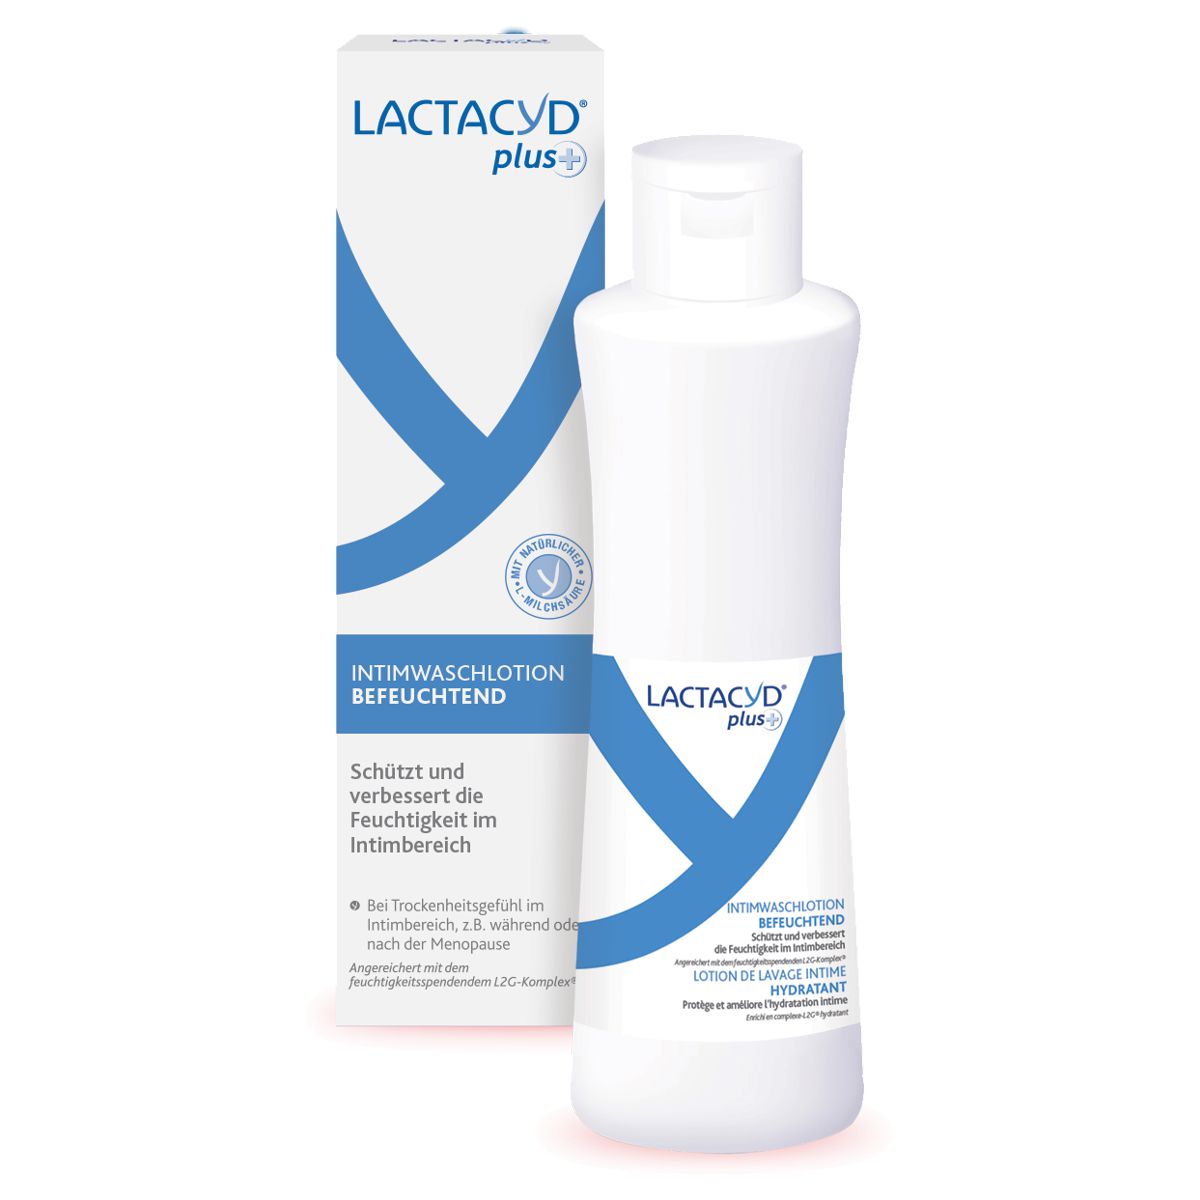 Lactacyd_Plus_Intimwaschlotion_befeuchtend_online_kaufen